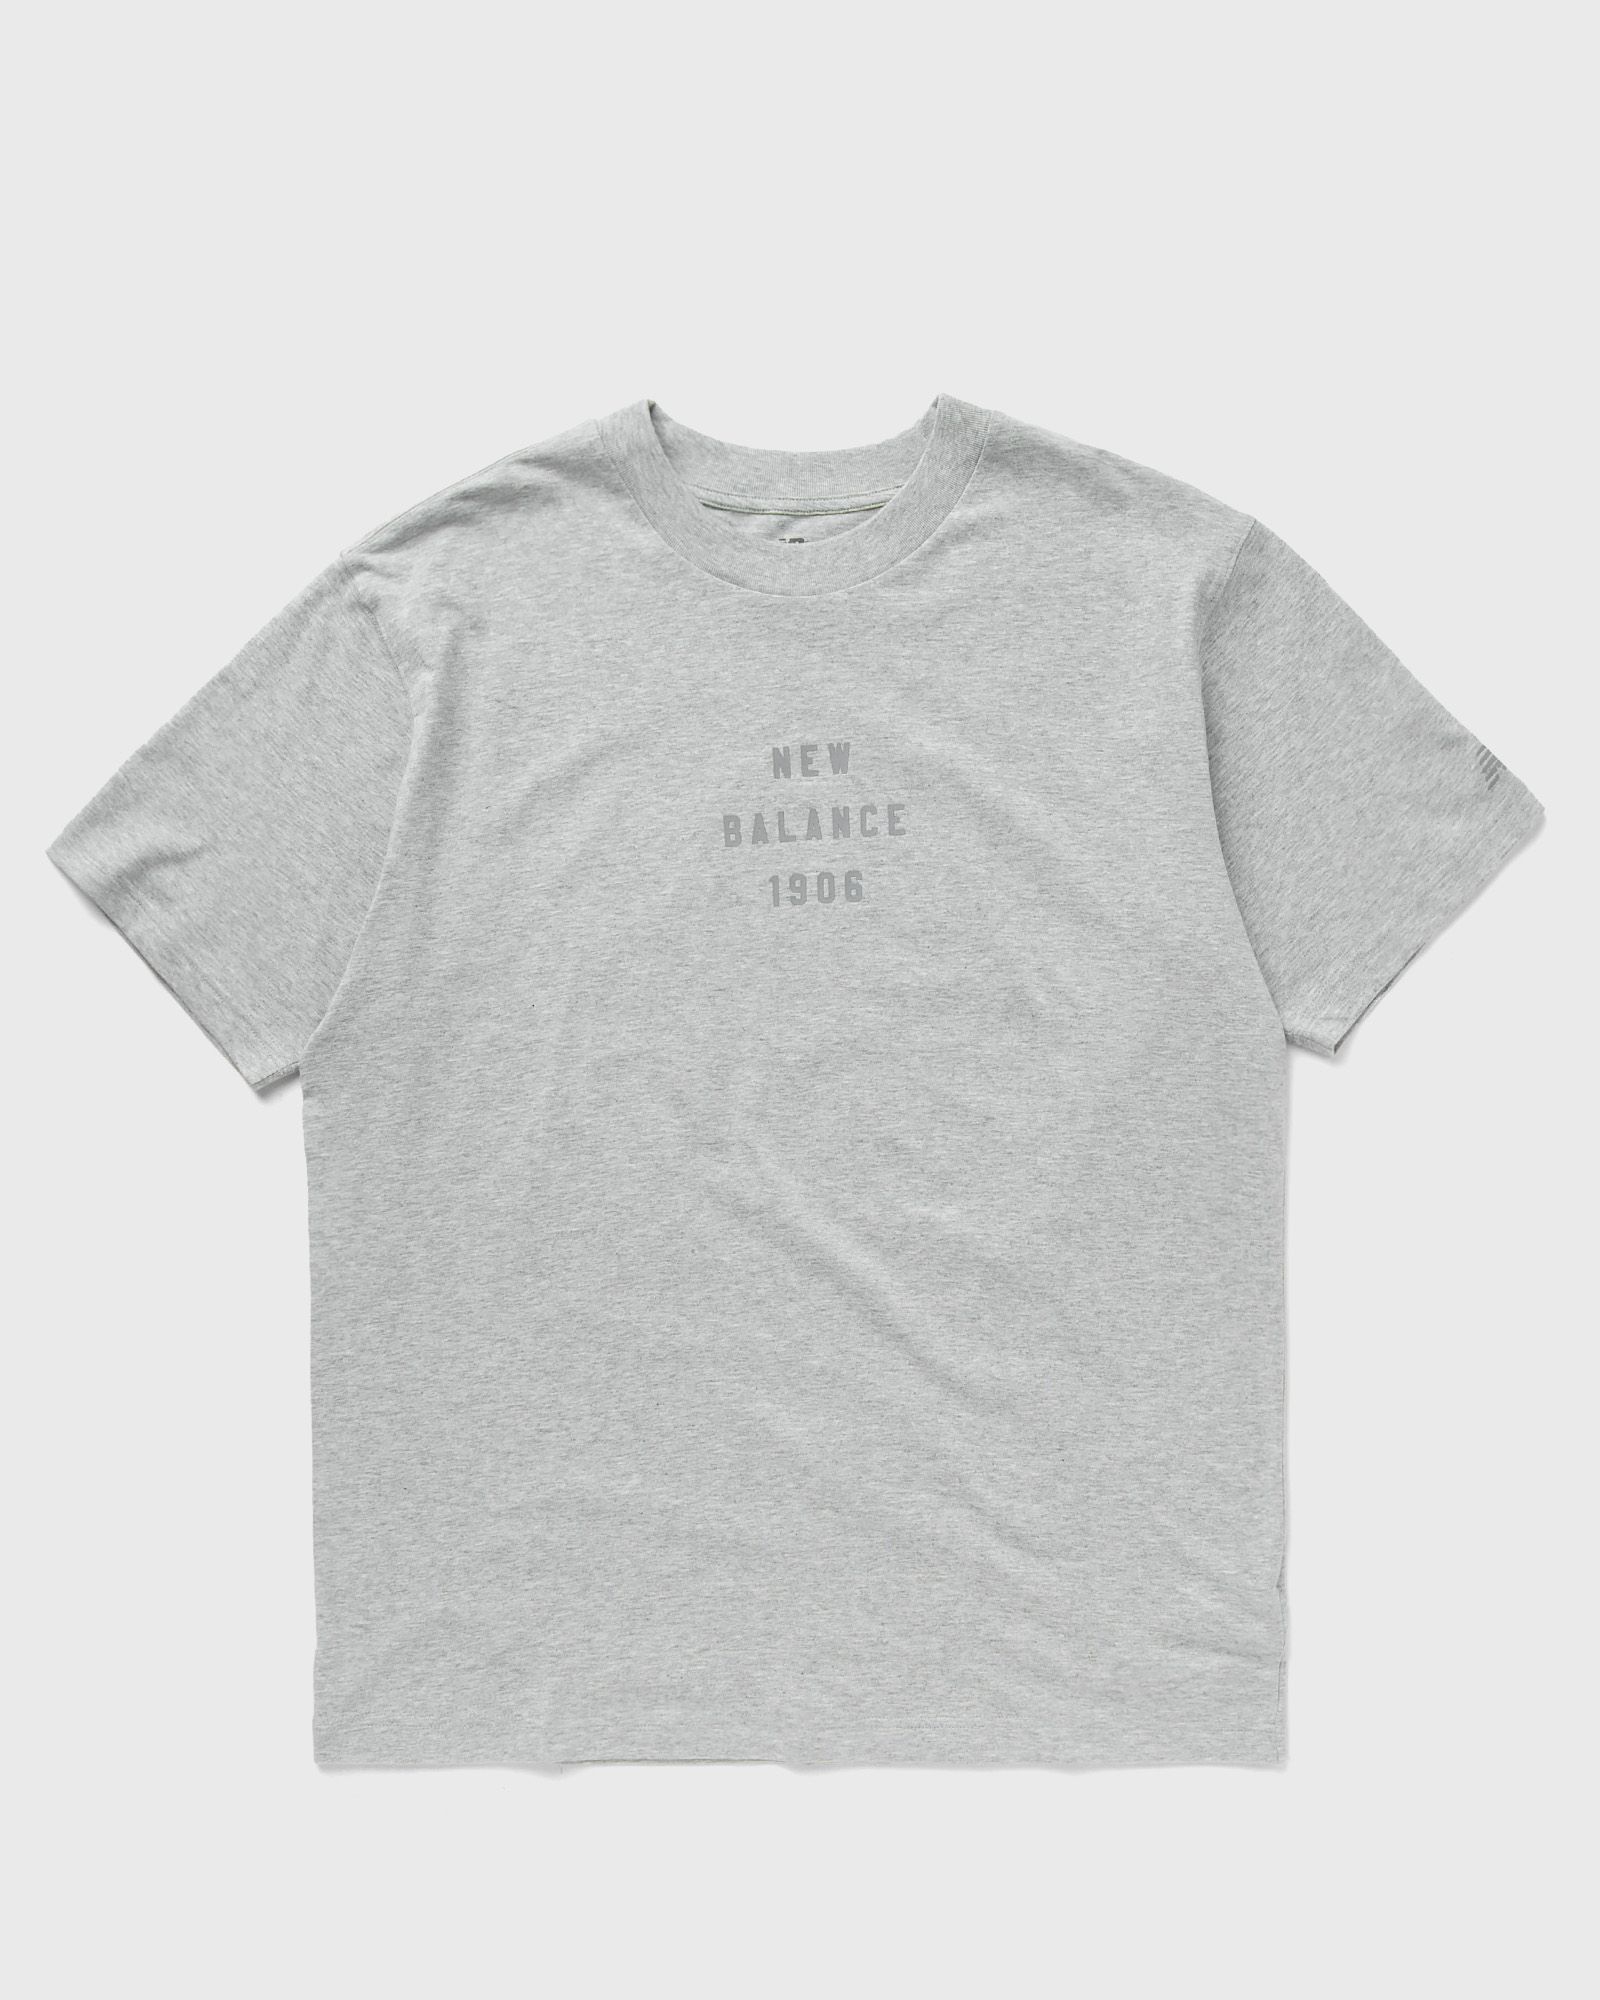 New Balance - sport essentials graphic t-shirt men shortsleeves grey in größe:s